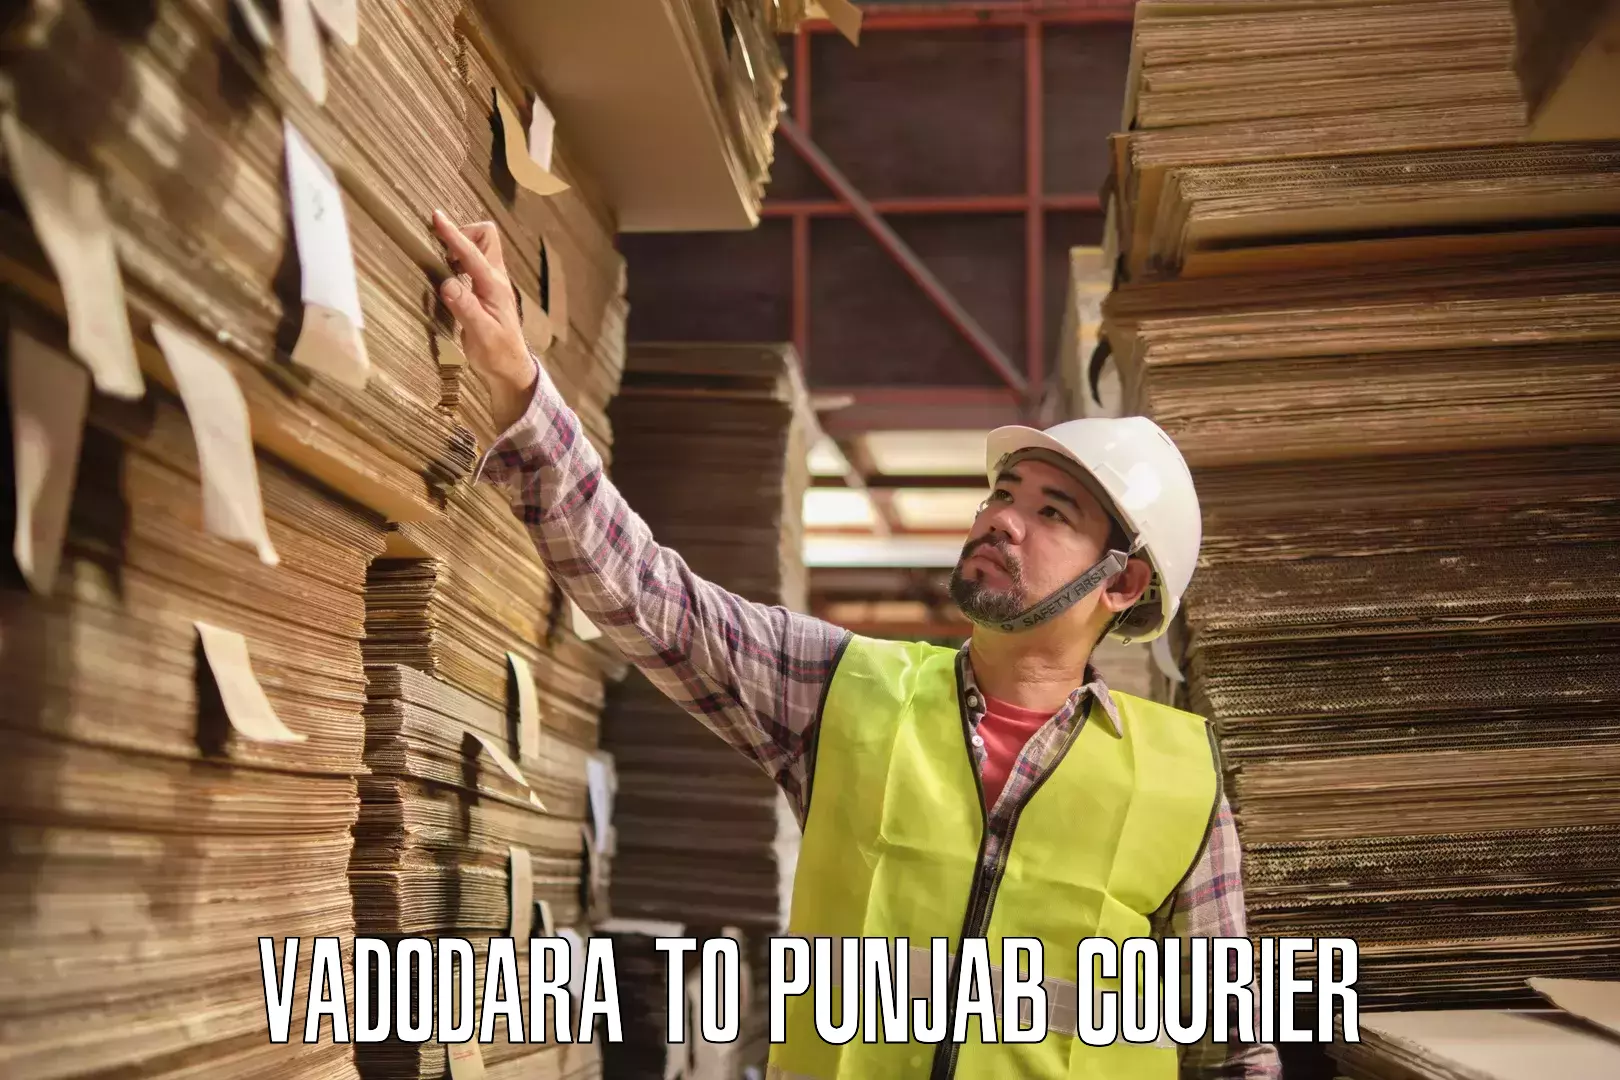 Tailored shipping plans in Vadodara to Punjab